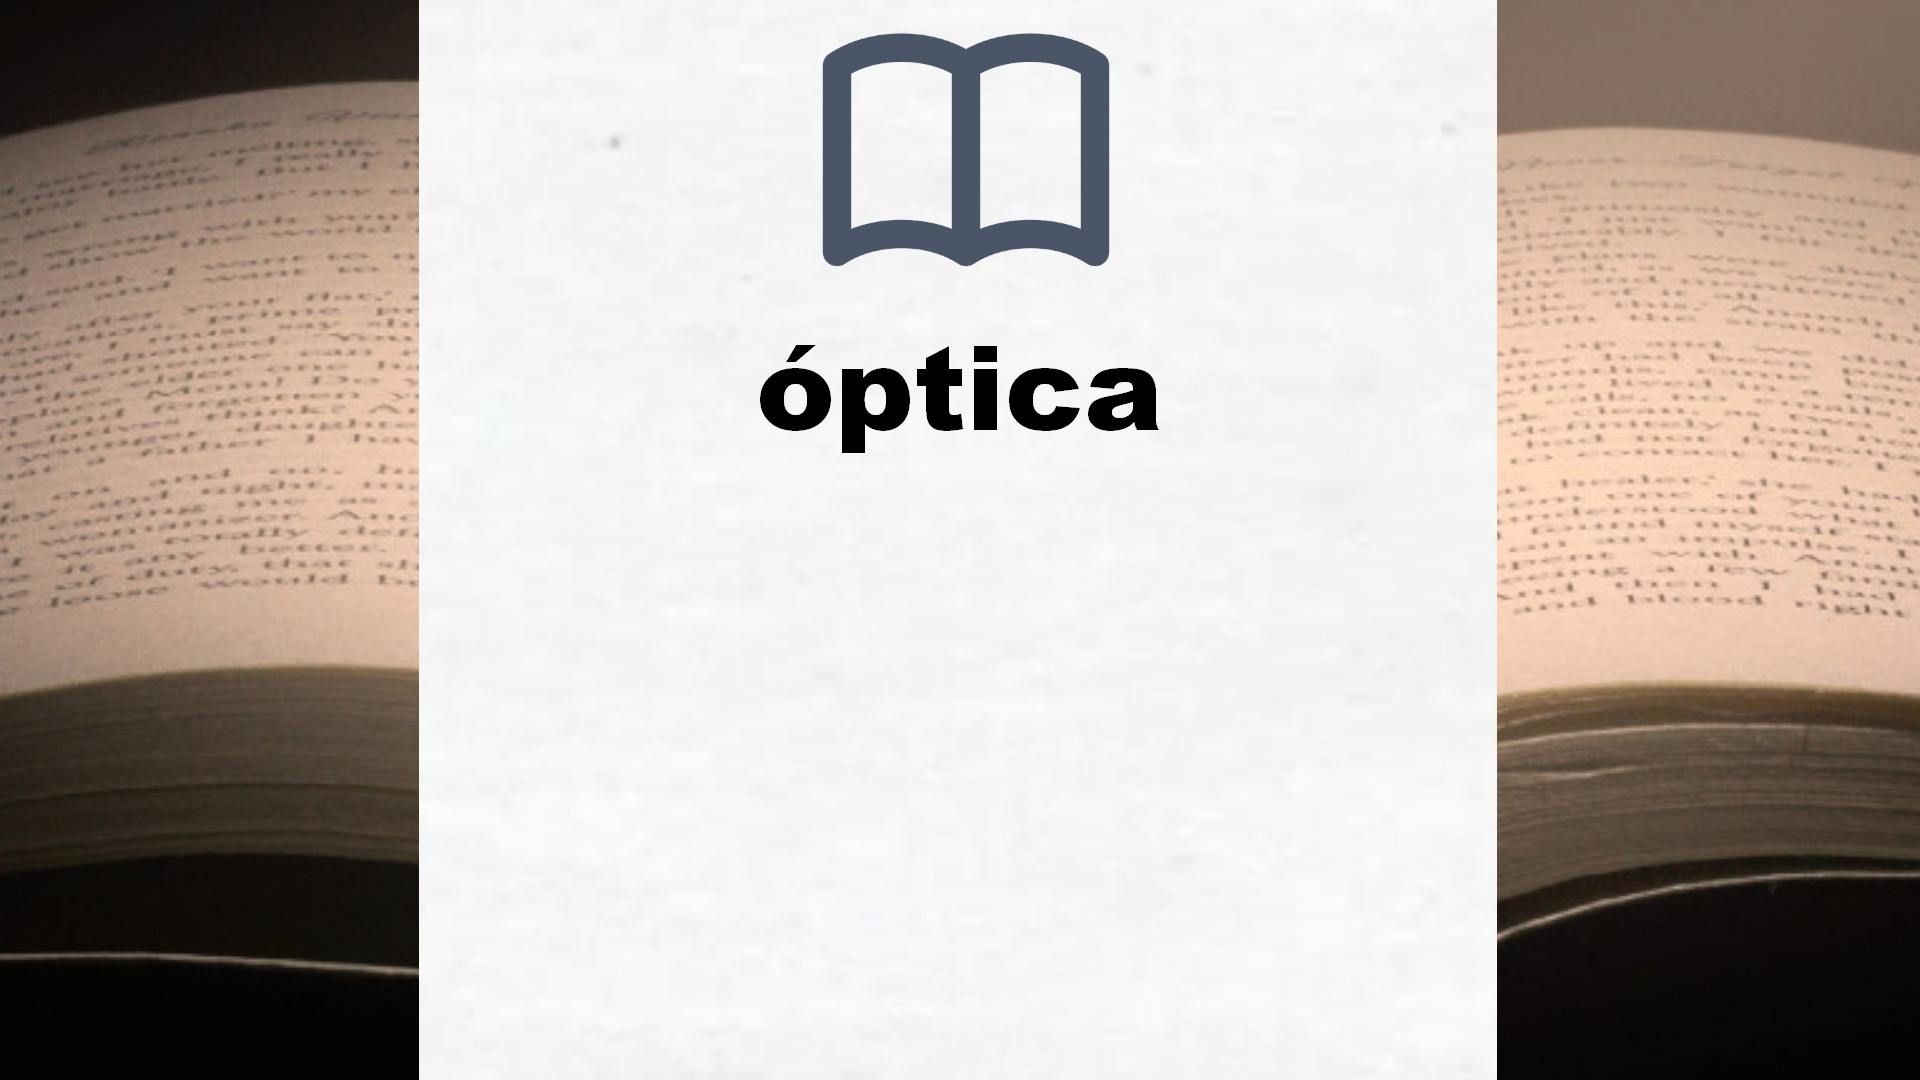 Libros sobre óptica